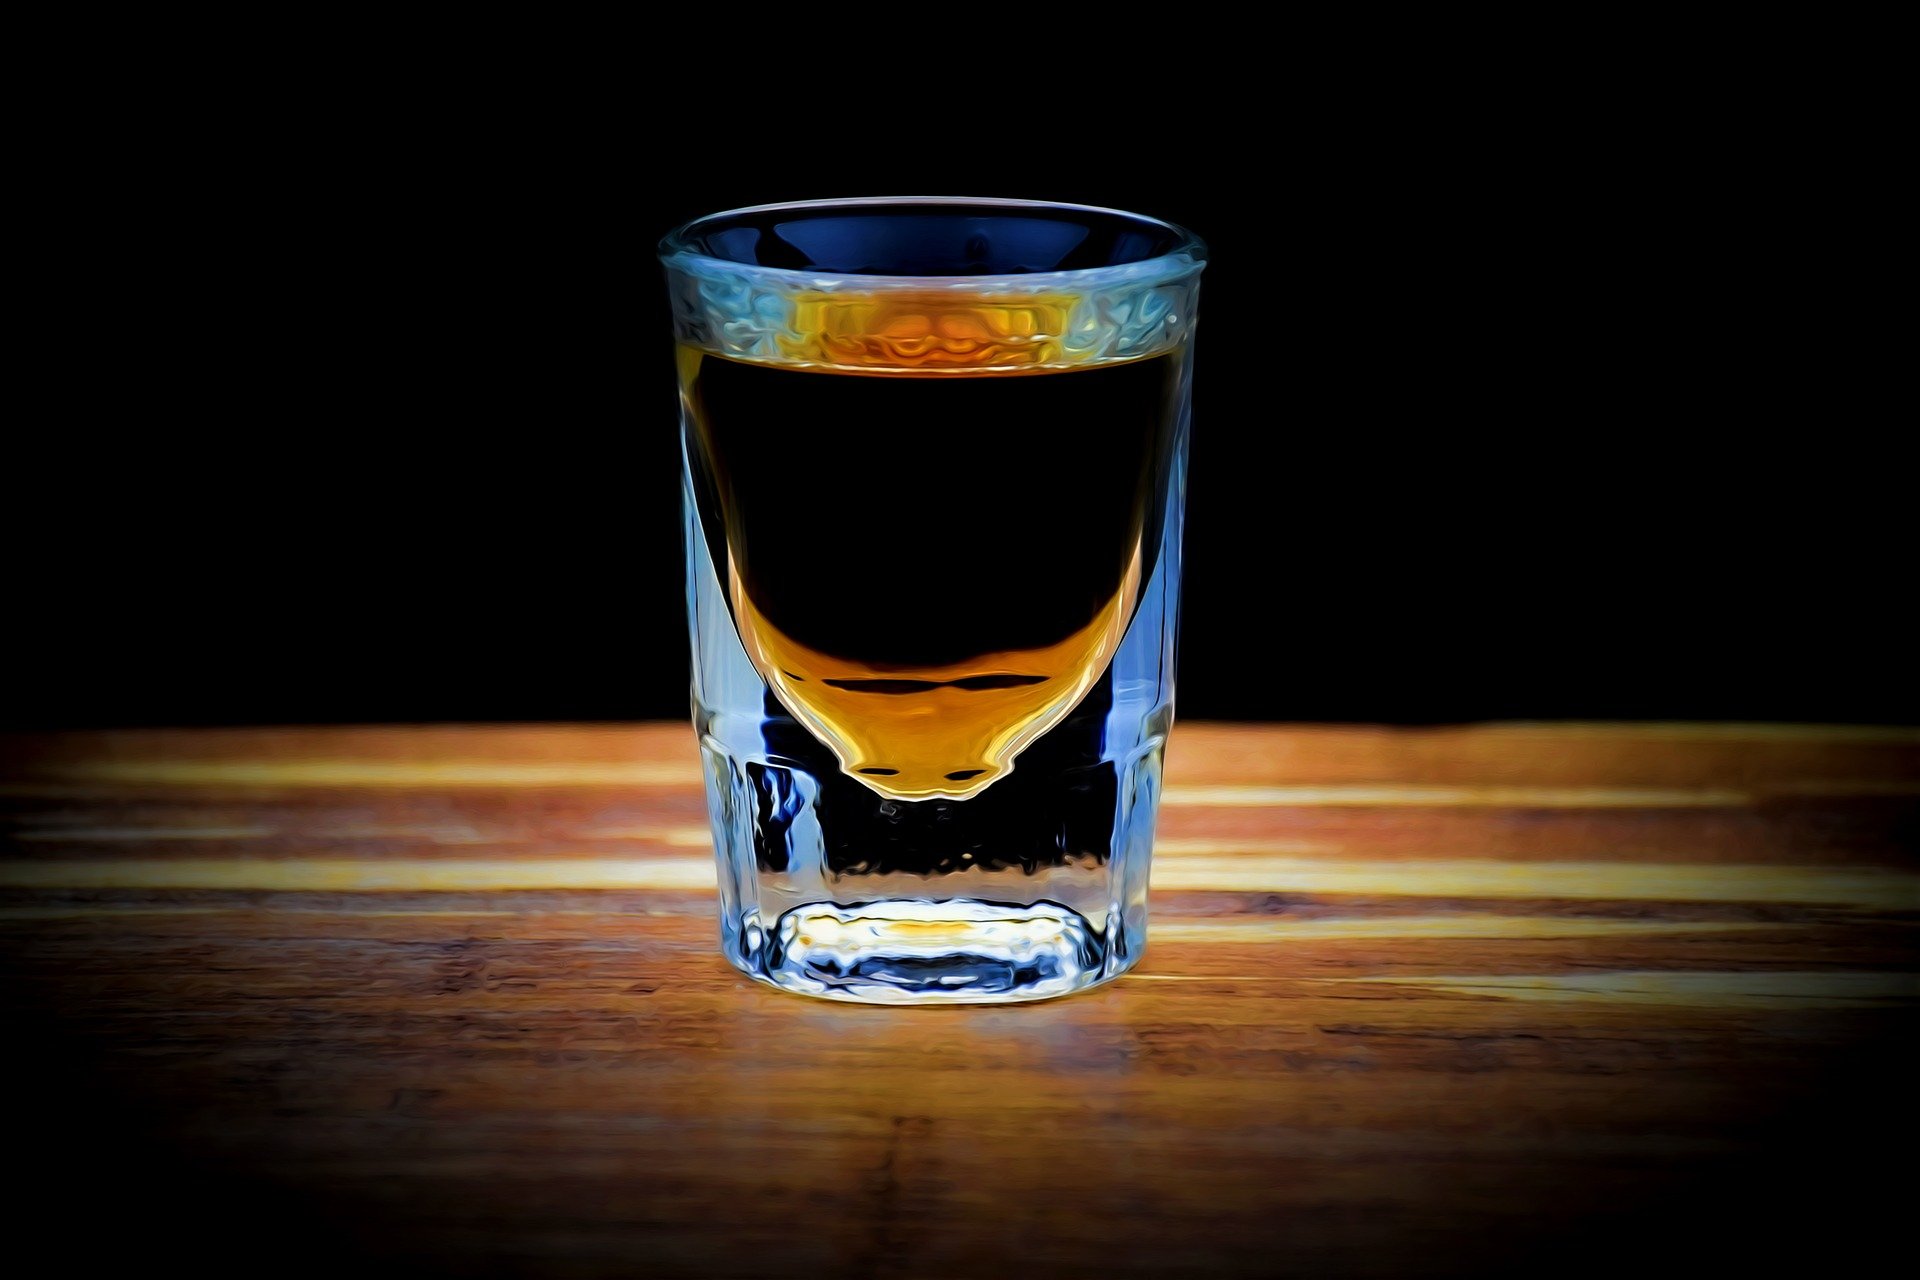 lit-whiskey-shot-4035278_1920